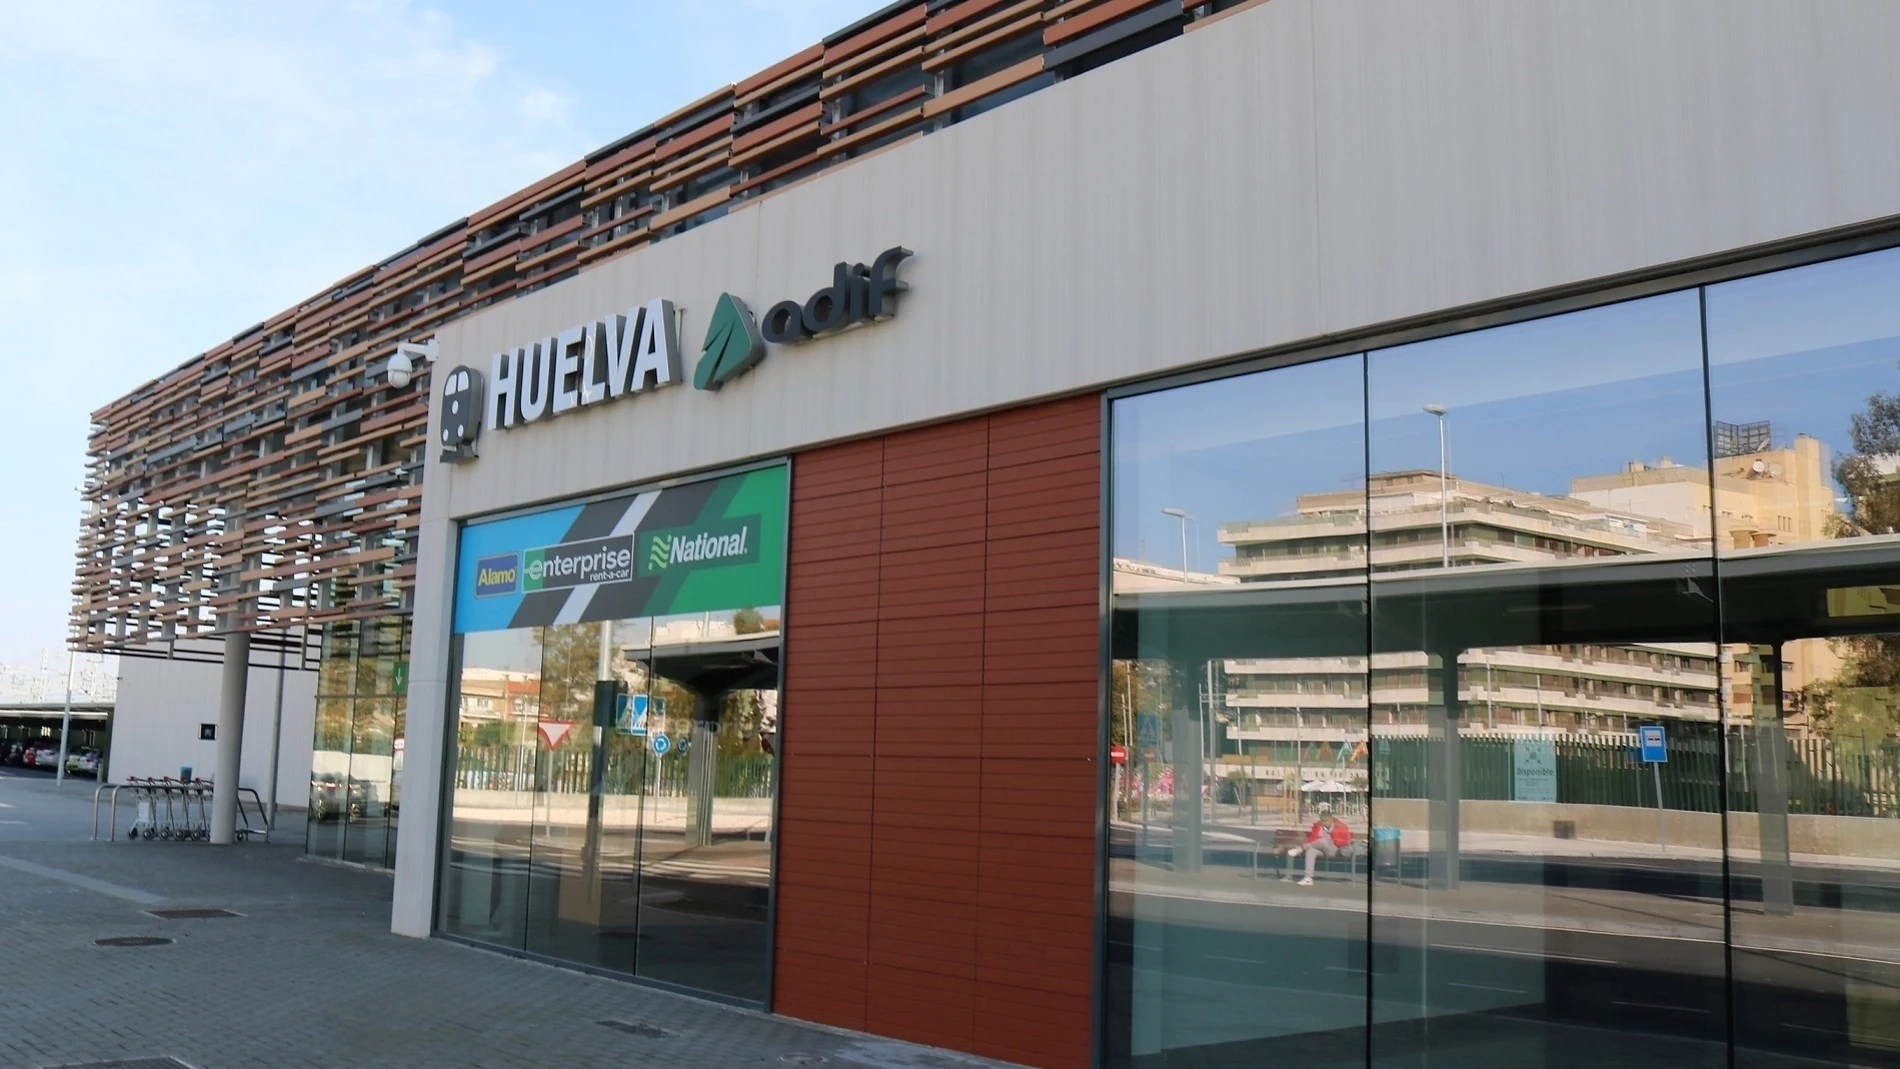 La plataforma del AVE a Huelva pide la adaptación de la vía al ancho europeo para albergar la alta velocidad